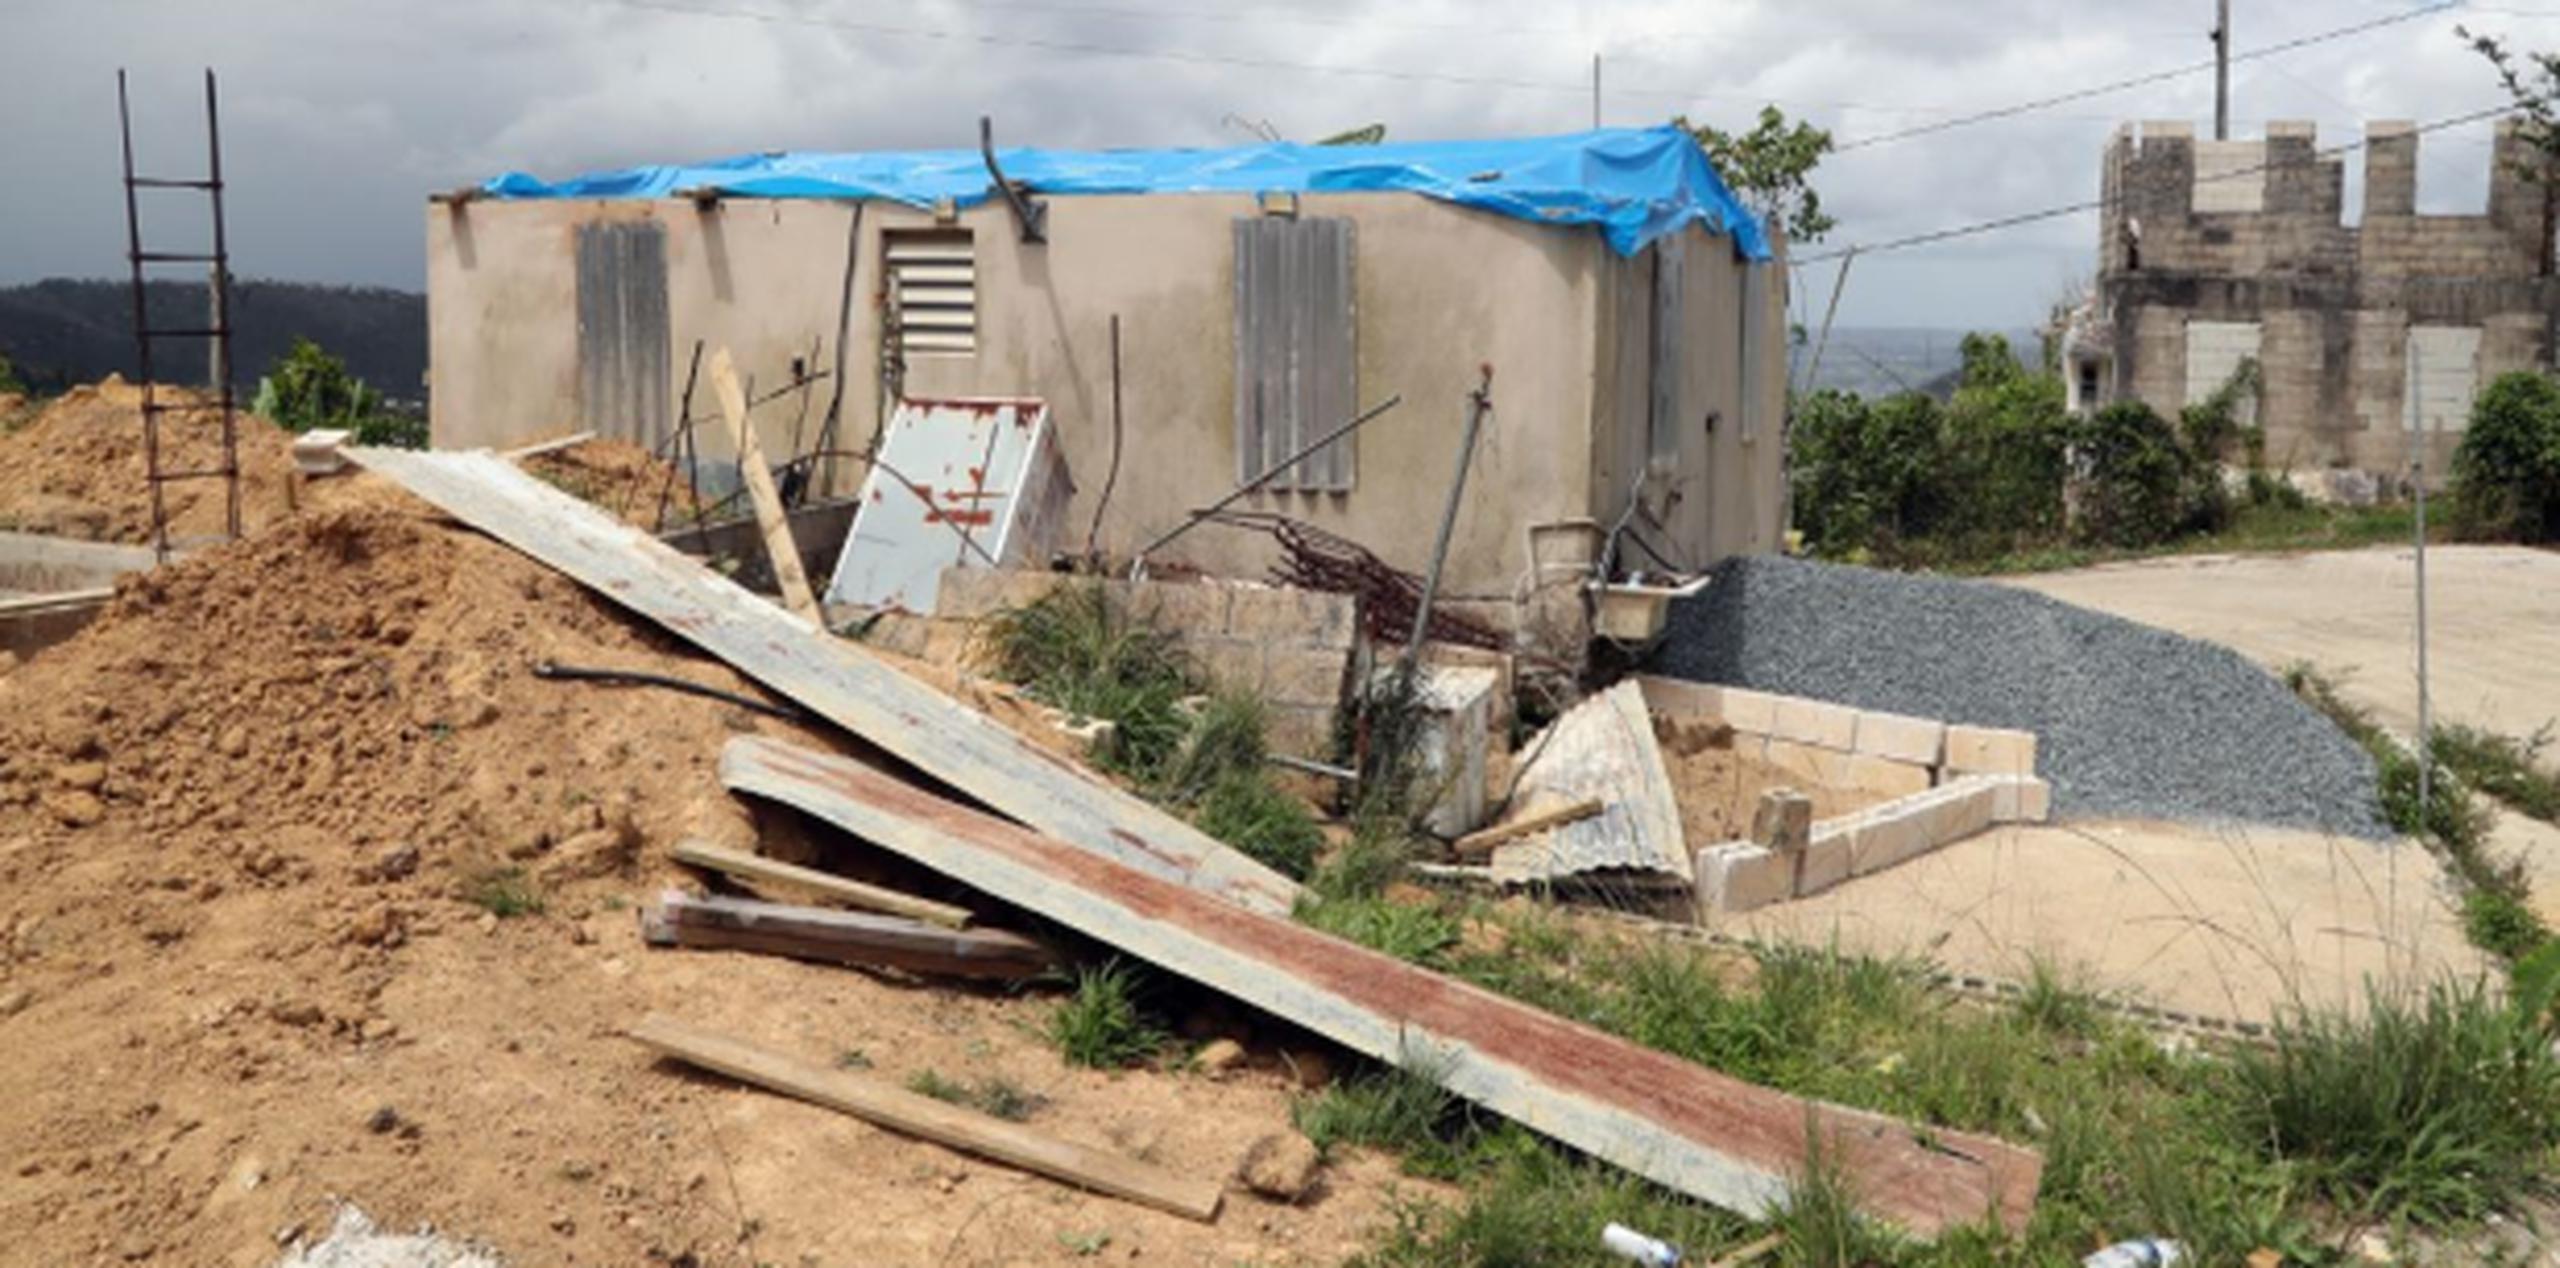 El ciclón se llevó el techo de la estructura, ubicada en el barrio Culebras Alto en Cayey. (david.villafane@gfrmedia.com)